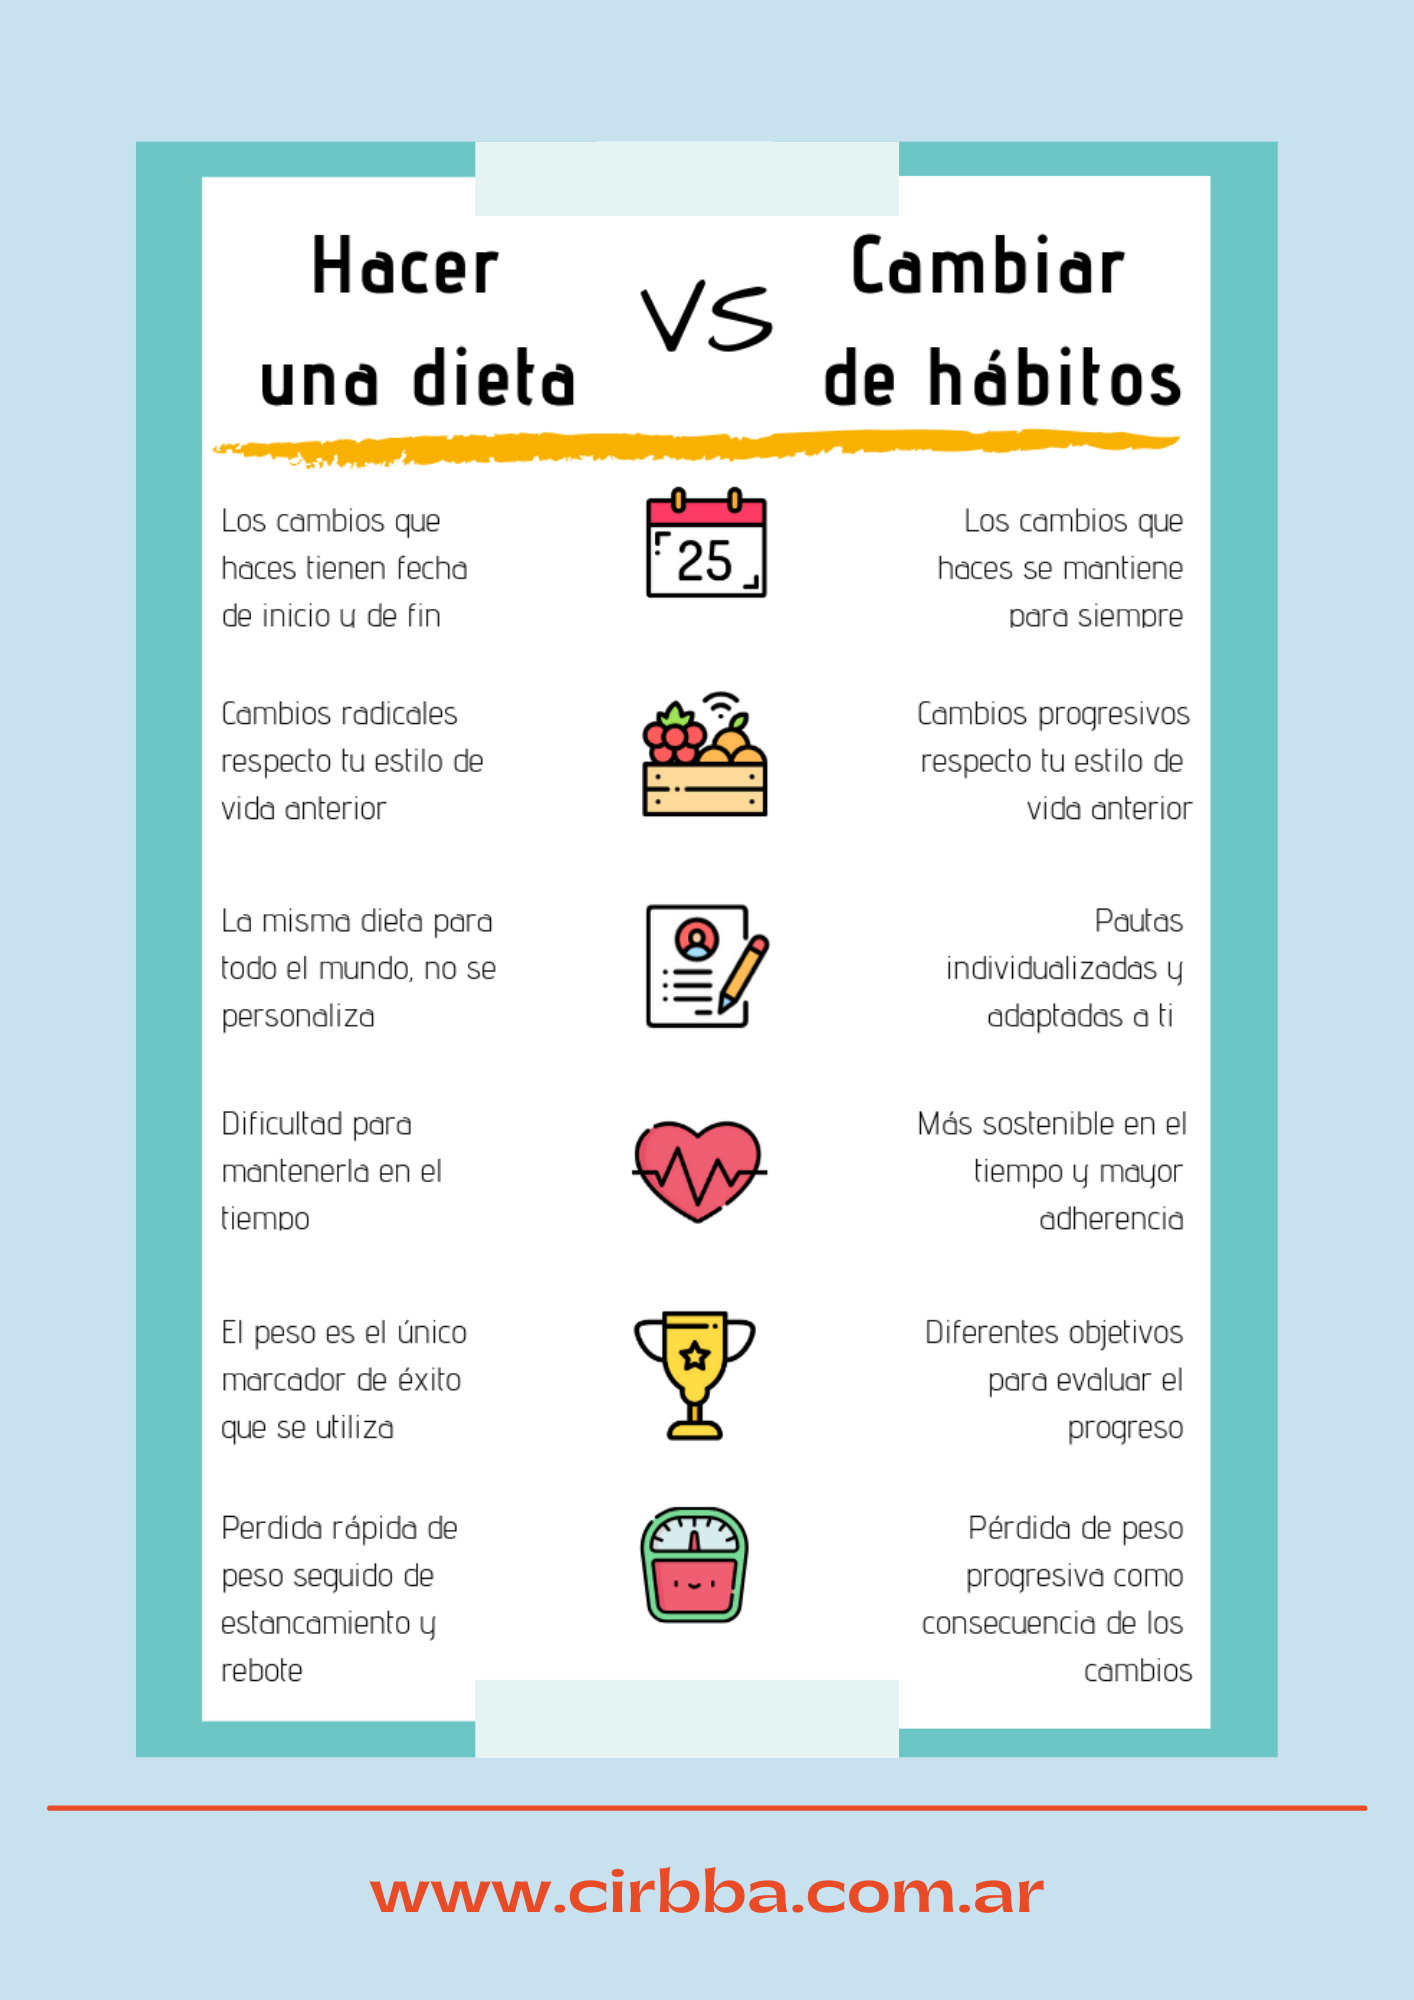 Hacer una dieta vs. cambiar de hábitos